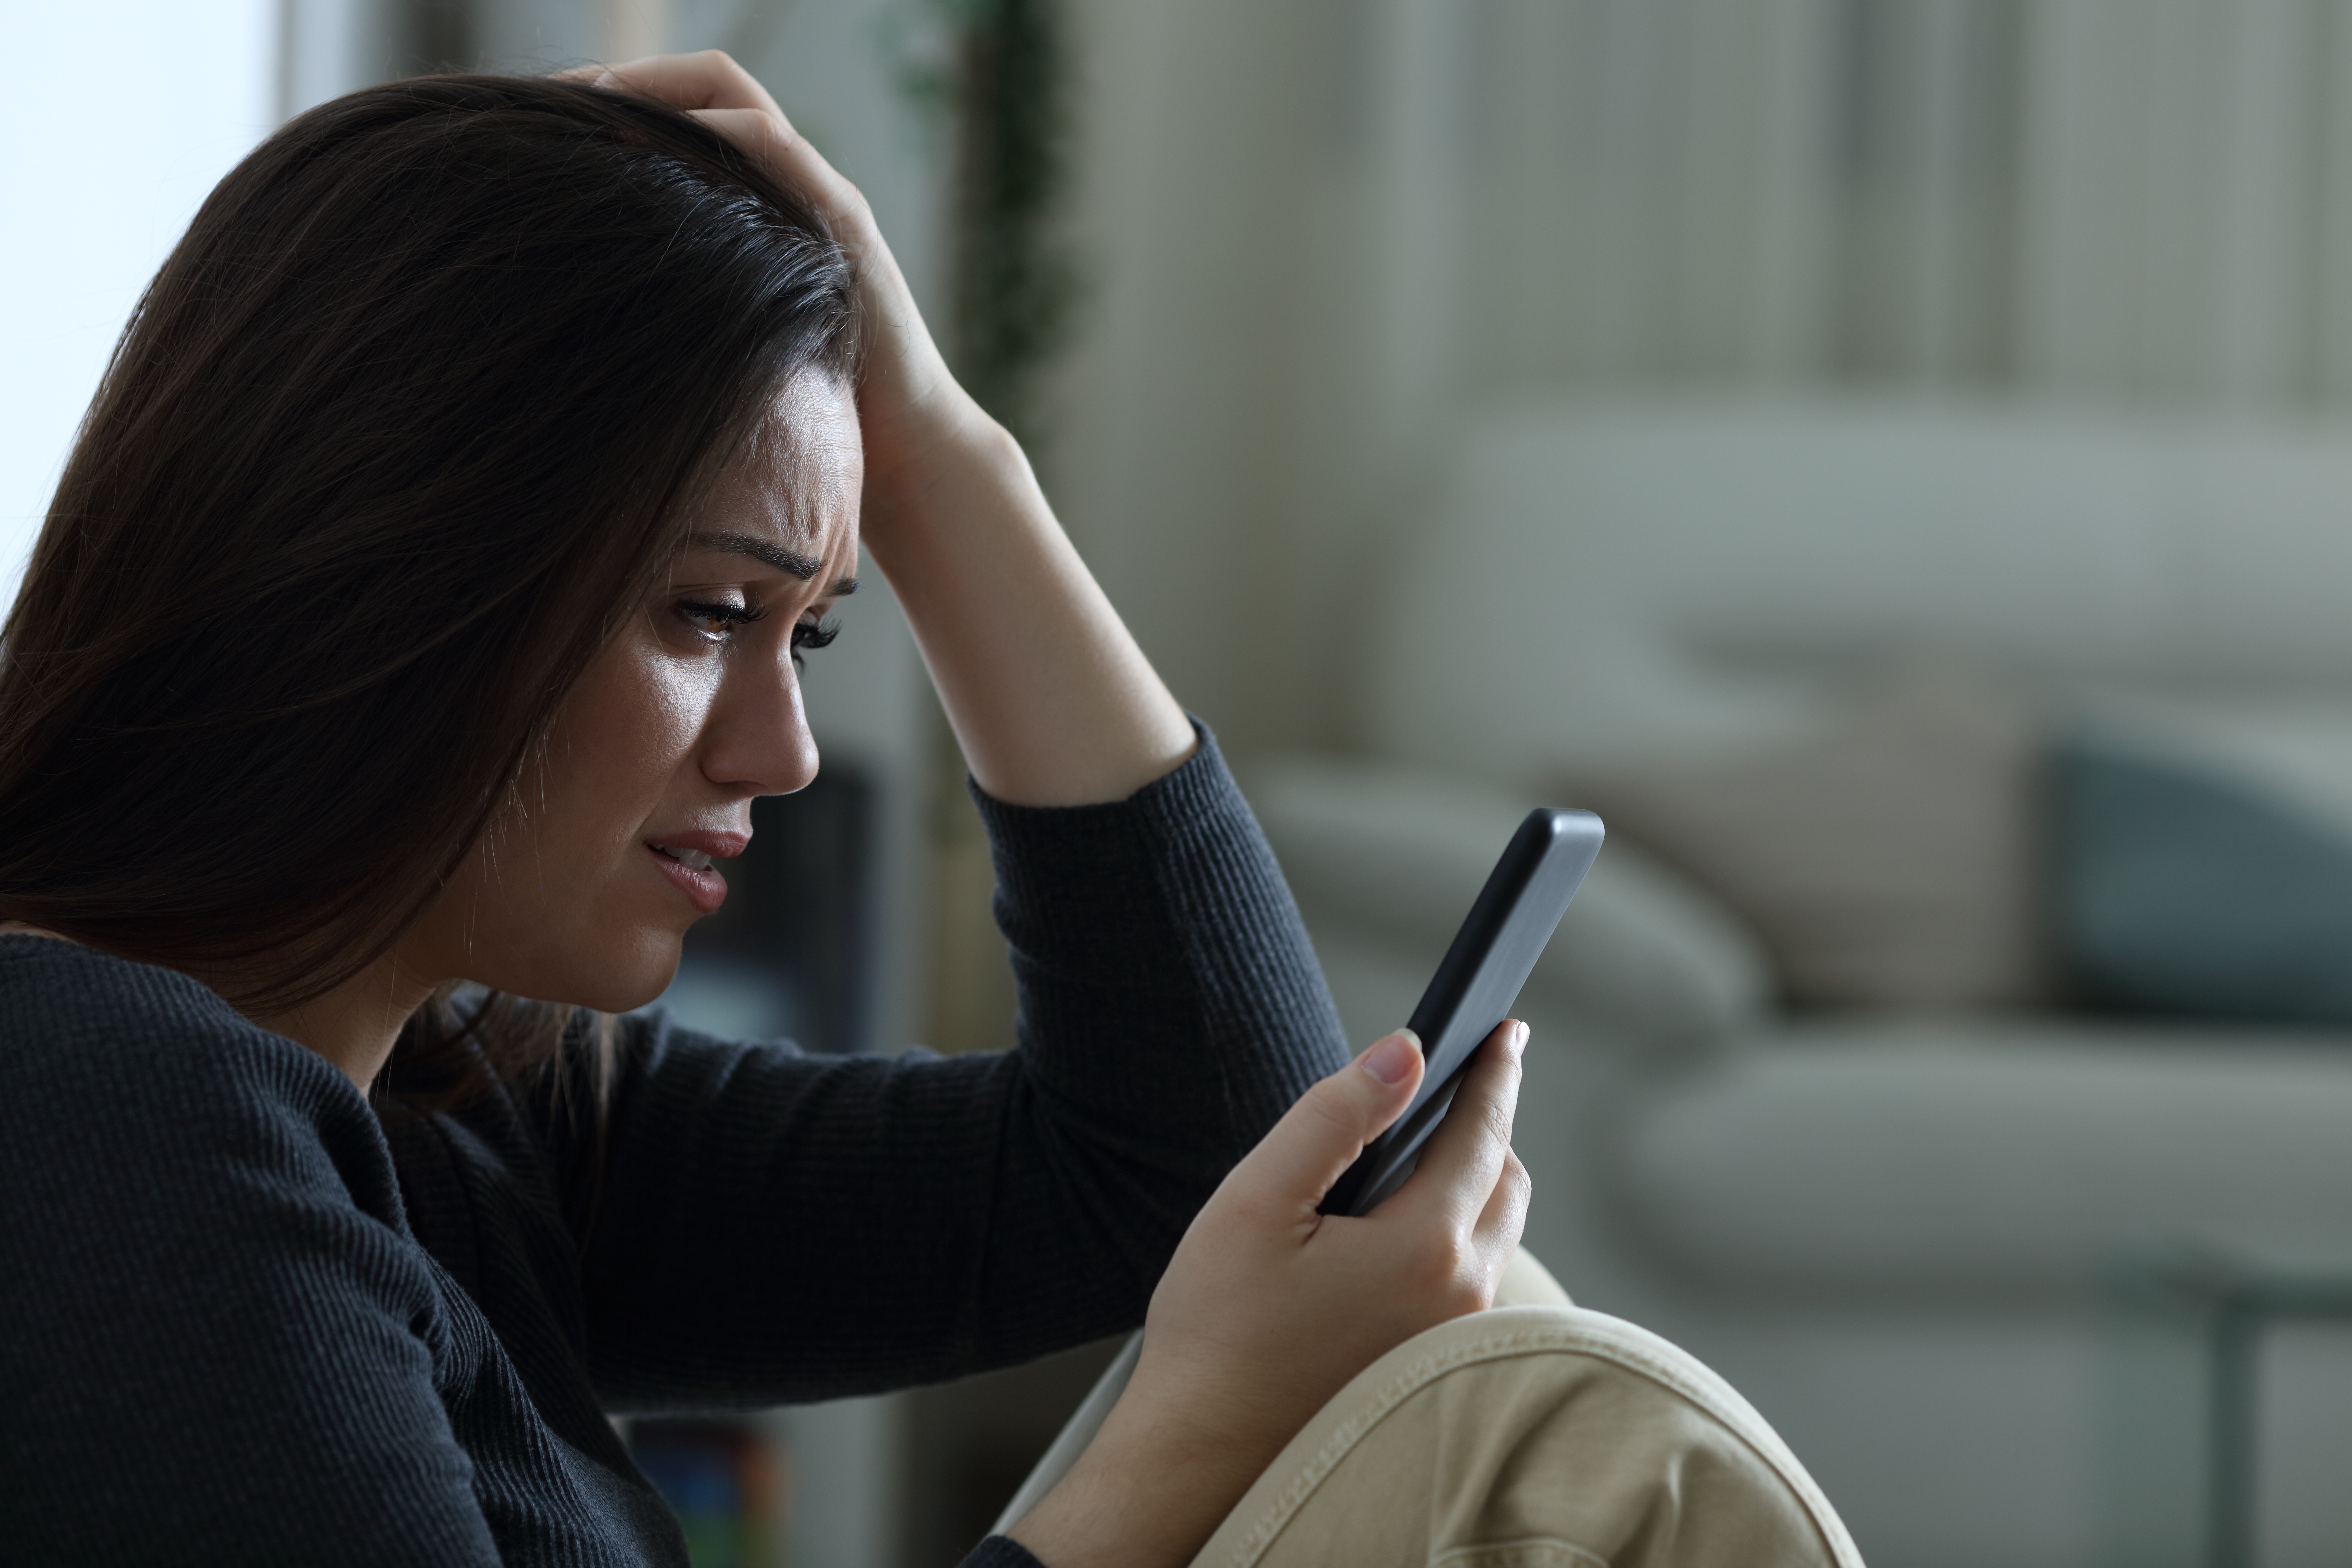 Une femme triste qui regarde son téléphone | Source : Shutterstock